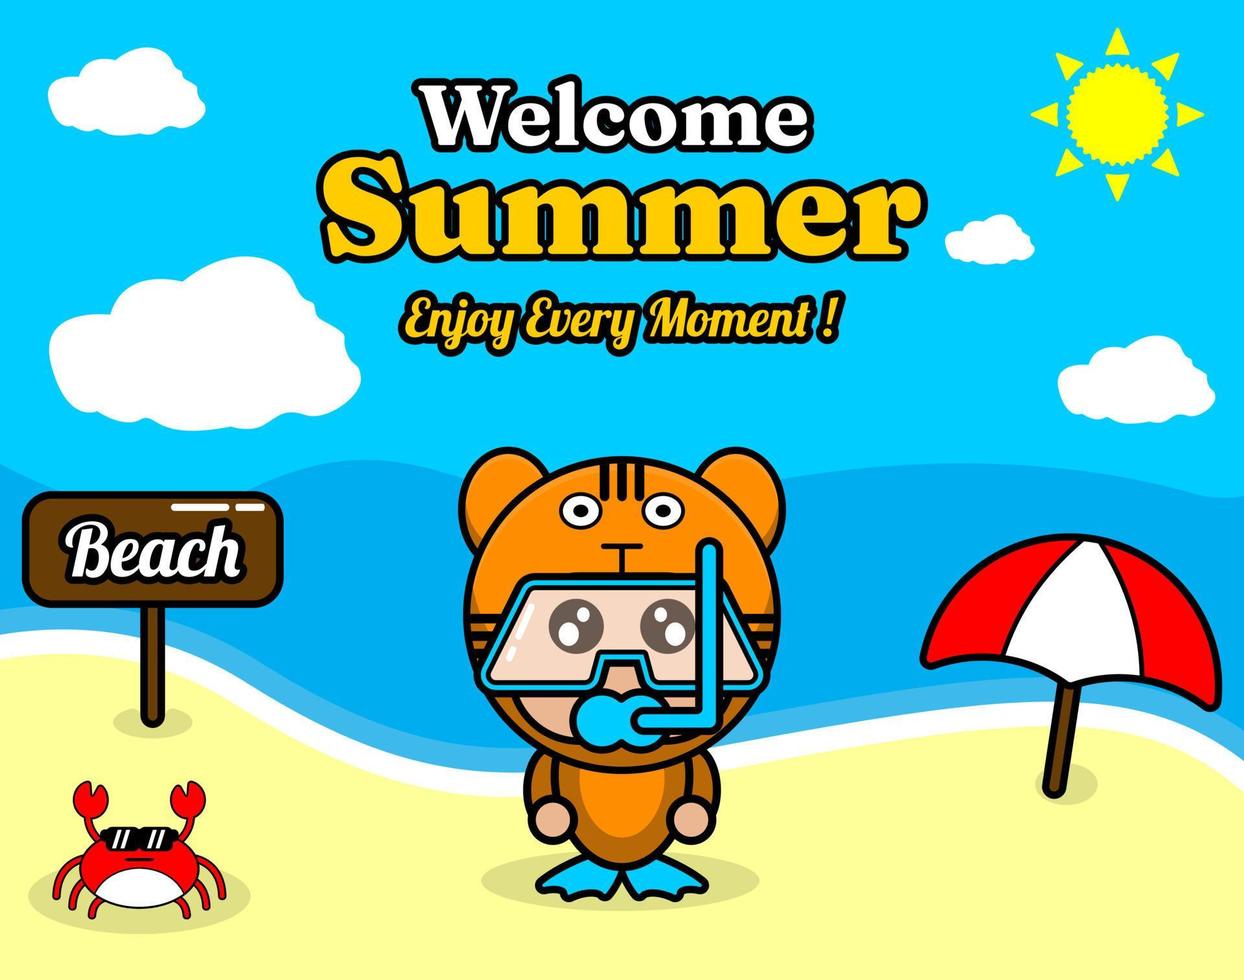 diseño de fondo de playa y arena de verano con texto disfrute de cada momento y el tablero de elementos de verano dice playa, cangrejo y paraguas, con traje de mascota de animal tigre usando senorkel vector